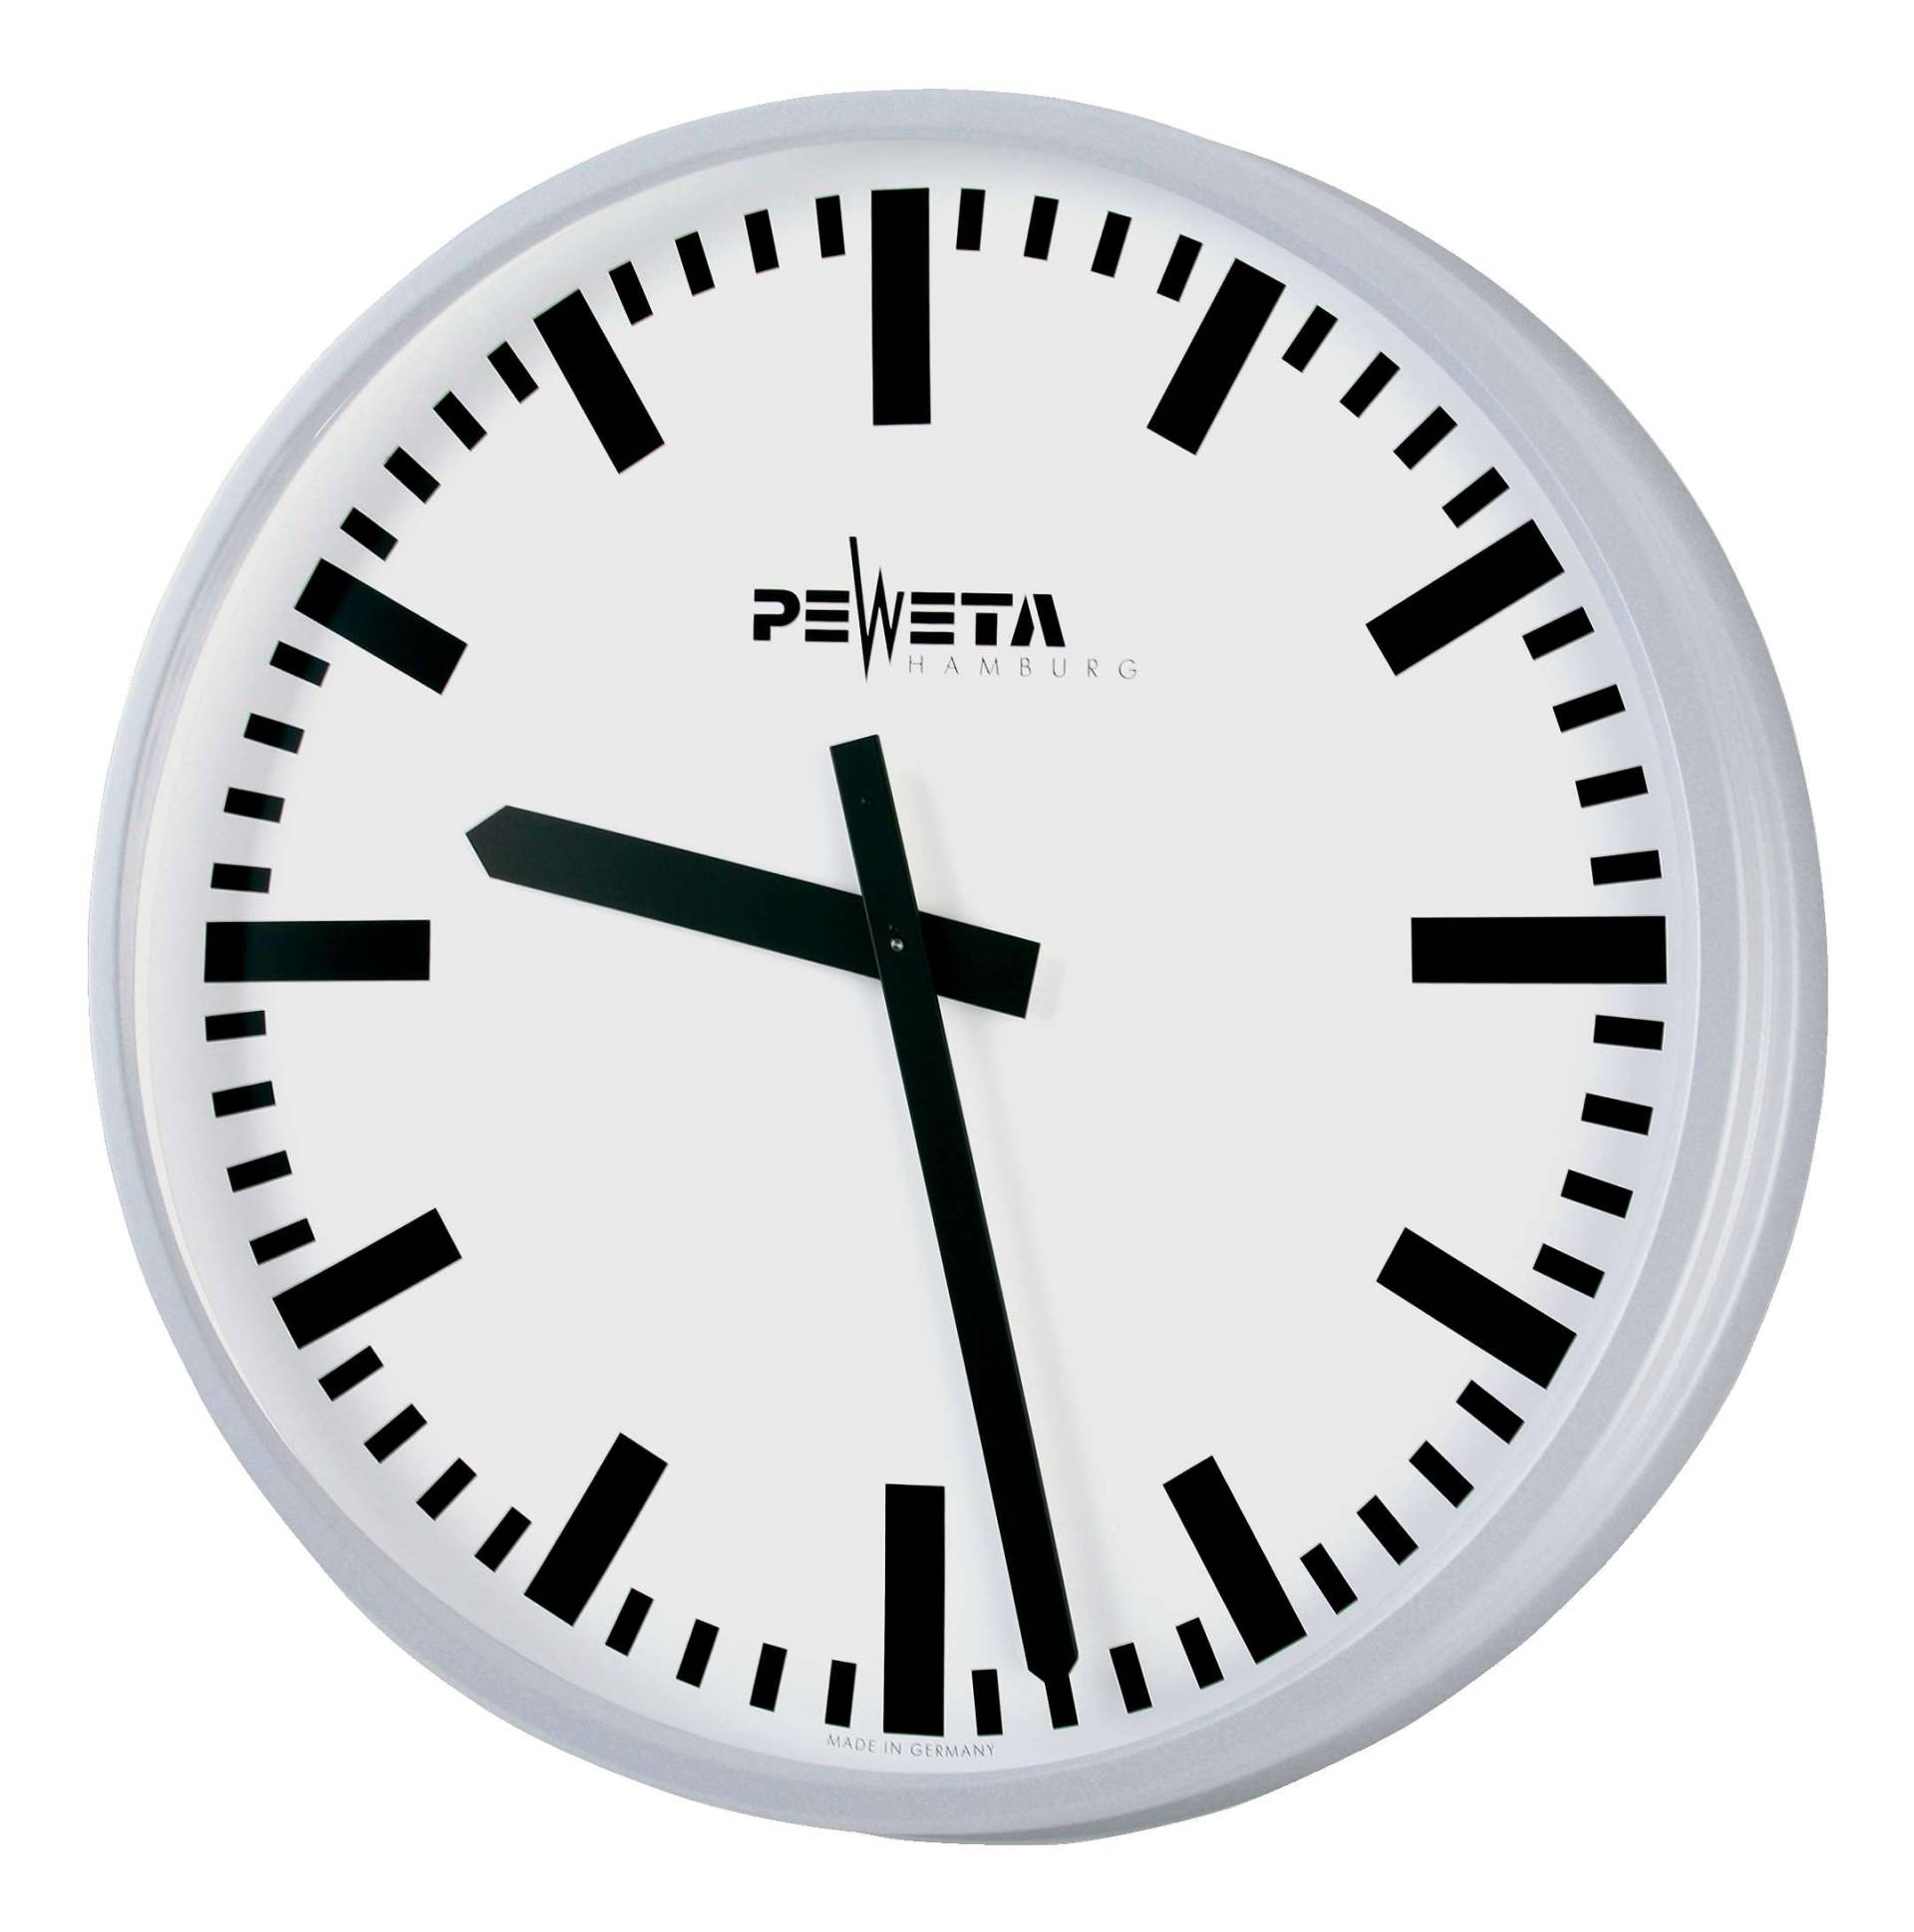 Peweta Wanduhr Großraum, ø 52 cm, Netzbetrieb, Standard, Zifferblatt DIN-Balken von Peweta